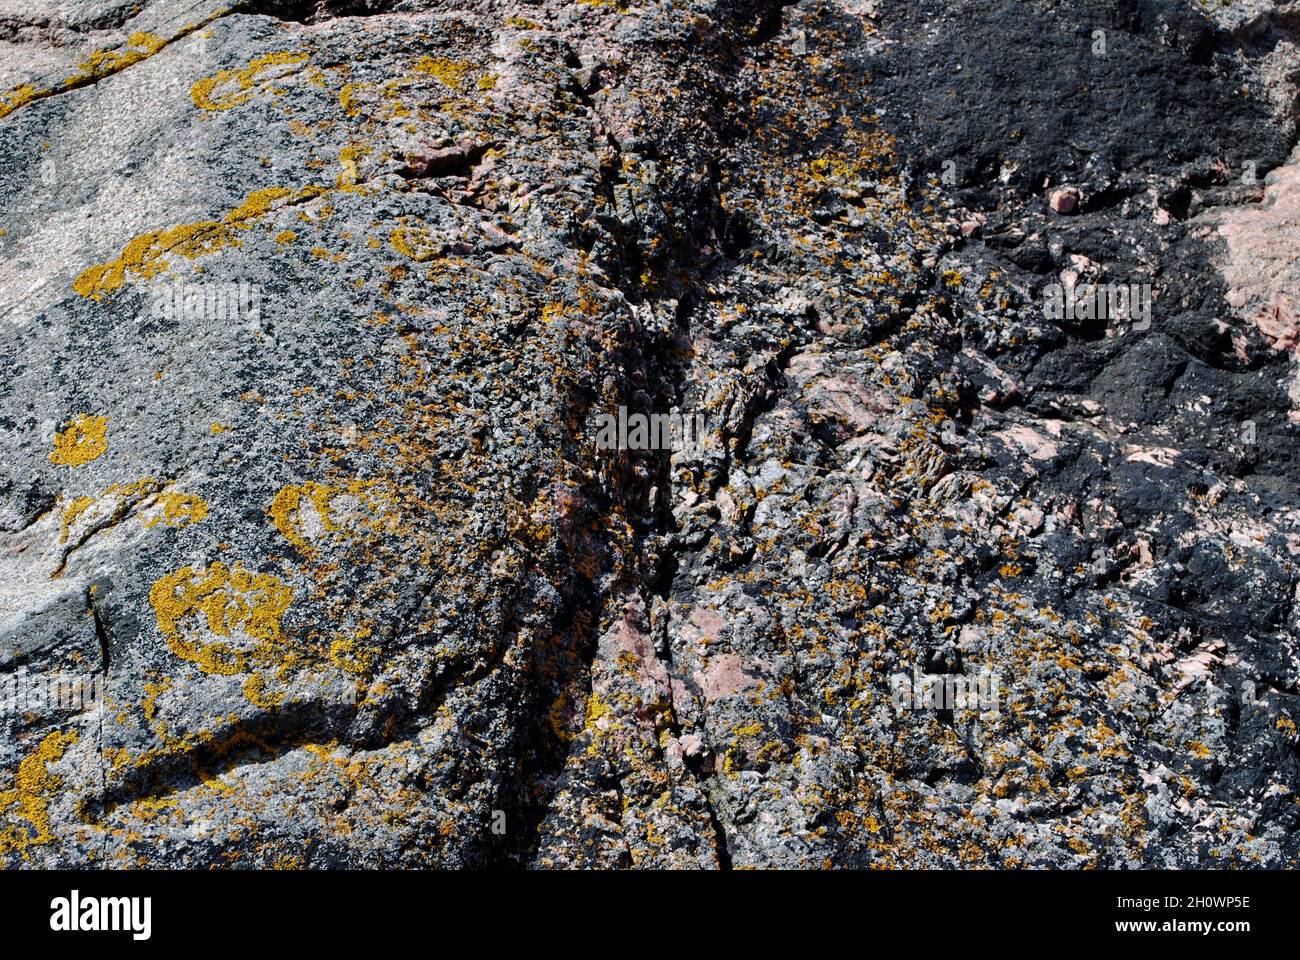 Formazioni rocciose su un'isola dell'arcipelago di Fjällbacka, sulla costa occidentale della Svezia Foto Stock